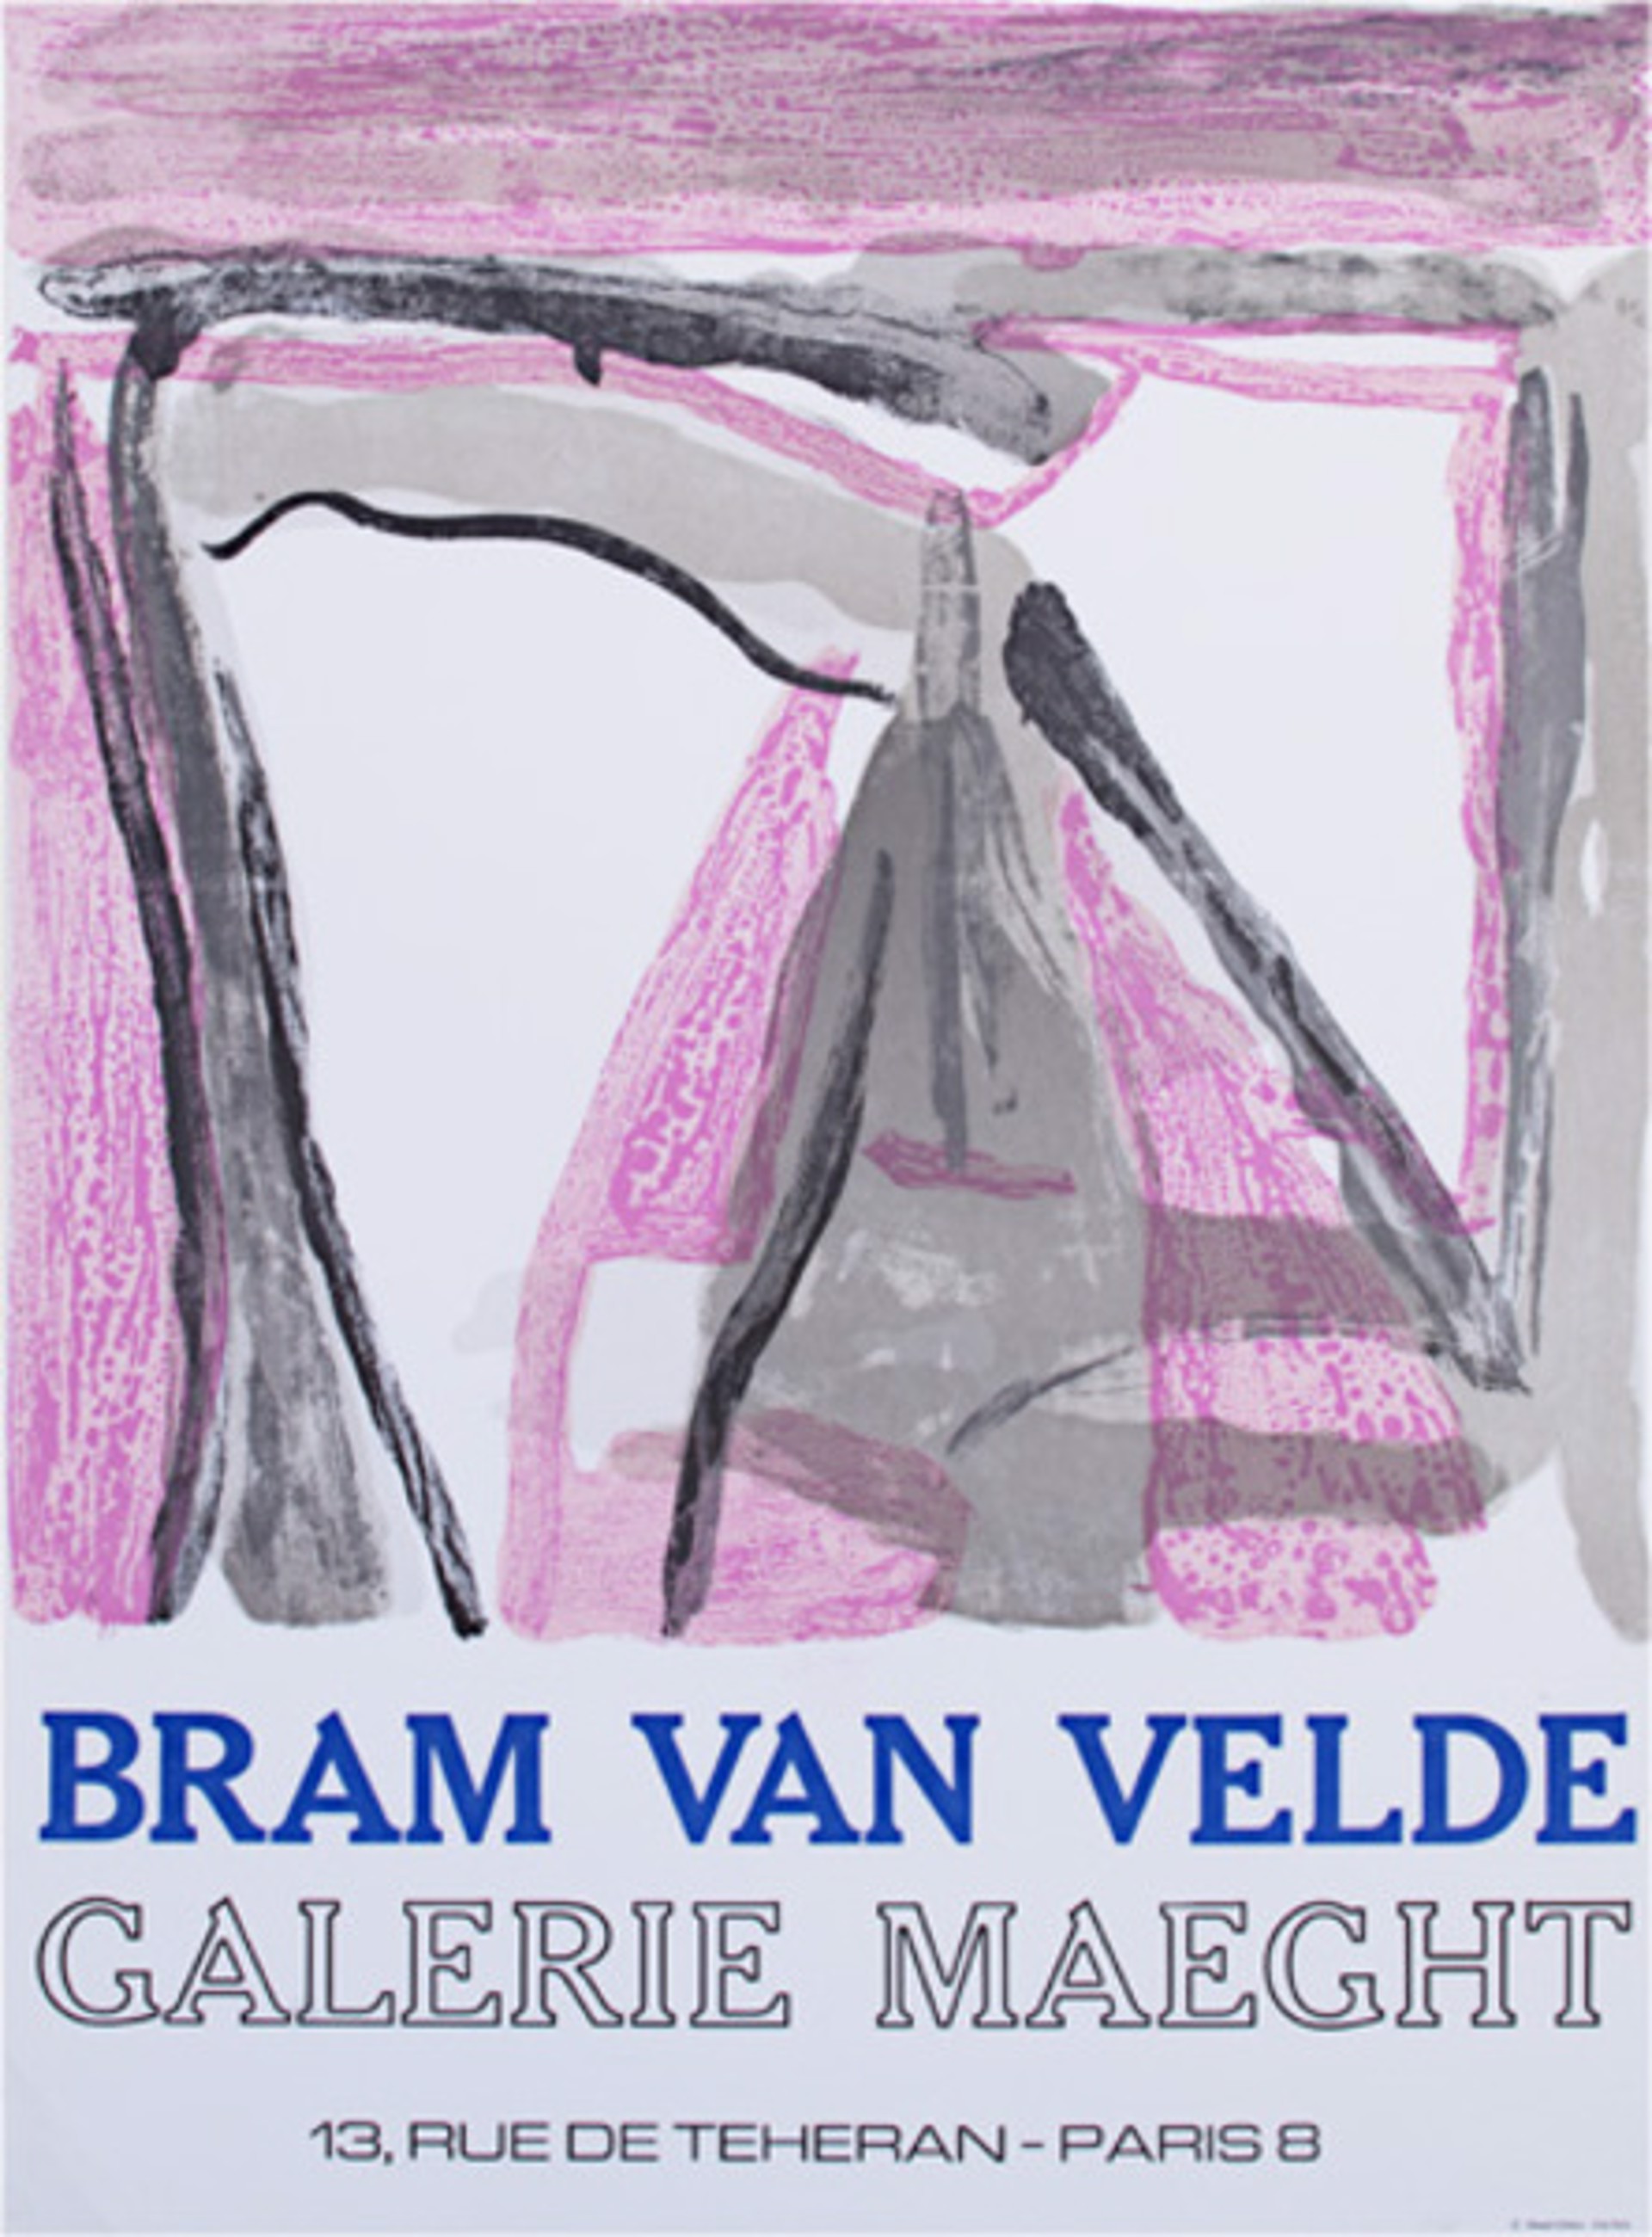 Galerie Maeght Exhibition Poster by Bram Van Velde